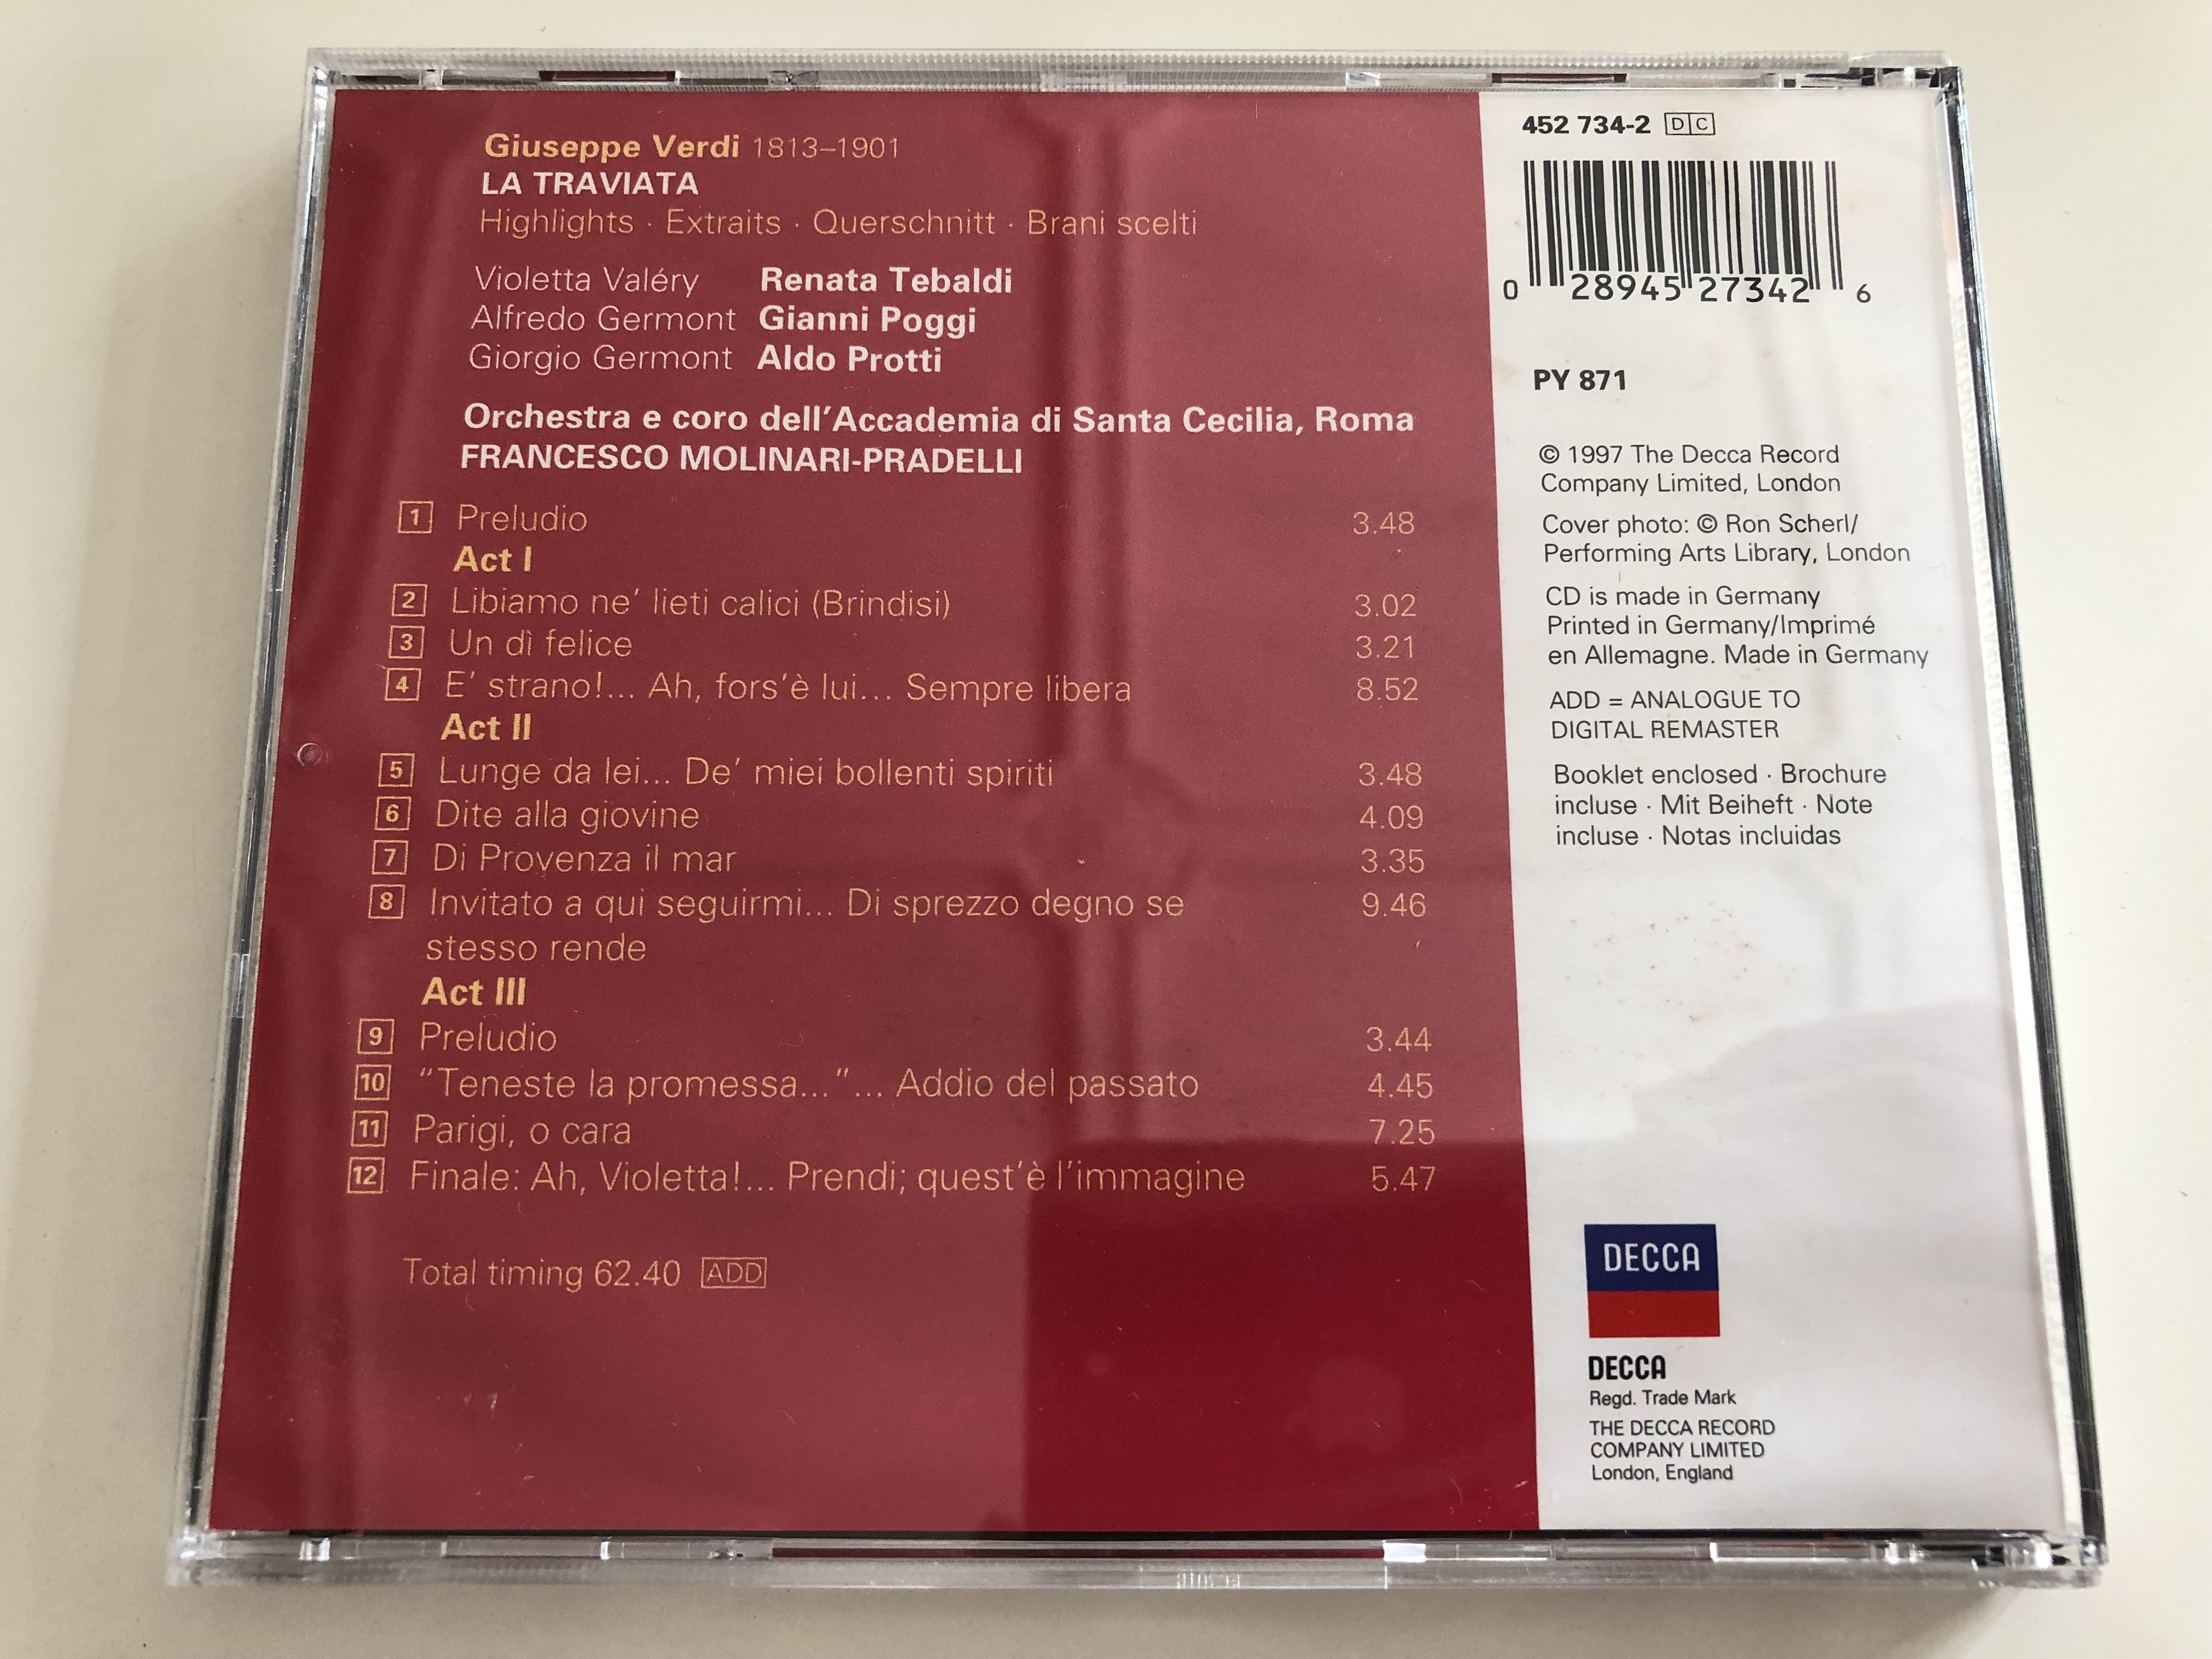 verdi-la-traviata-highlights-extraits-querschnitt-brani-scelti-tebaldi-poggi-protti-accademia-di-santa-cecilia-roma-conducted-by-francesco-molinari-pradelli-decca-audio-cd-1997-452-734-2-py-871-5-.jpg